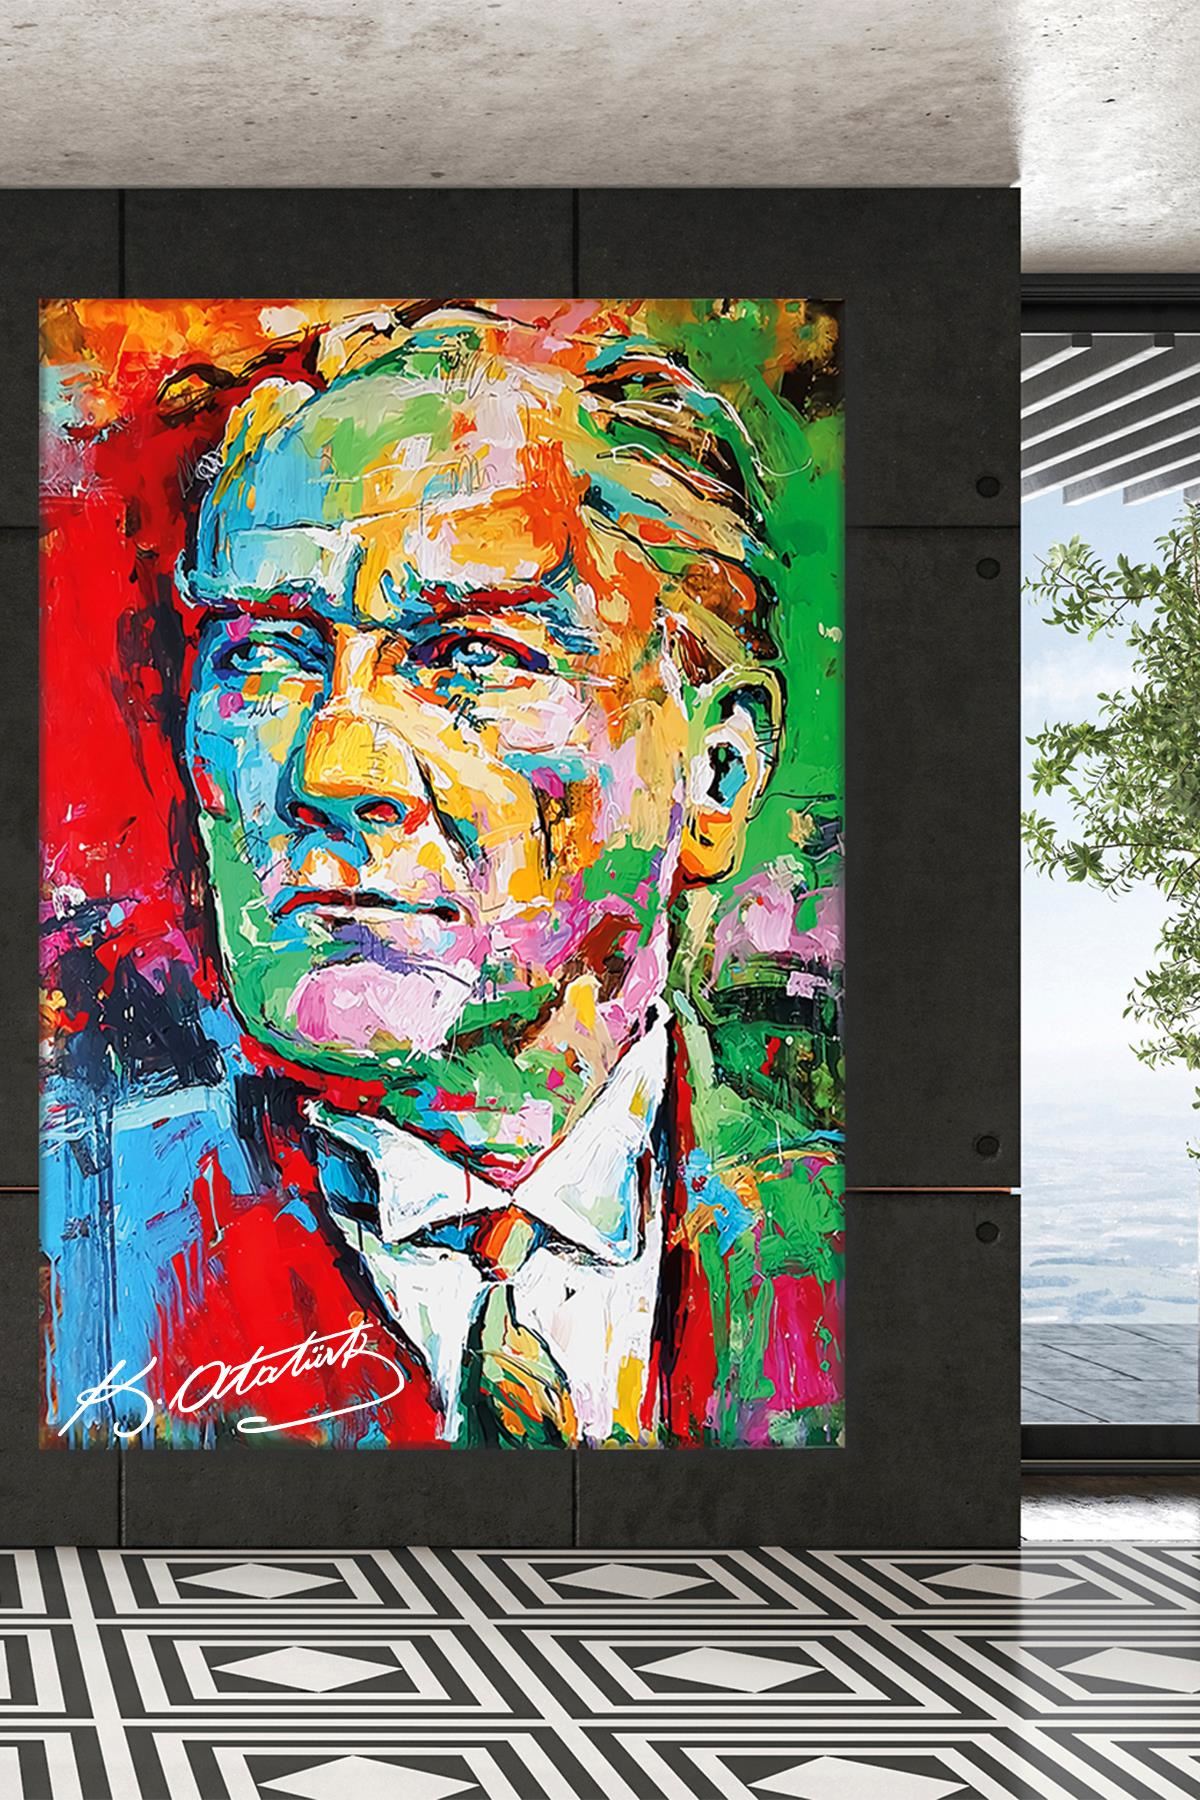 Renkli Atatürk Resmi Yağlı Boya Efektli Kanvas Duvar Tablo 221468